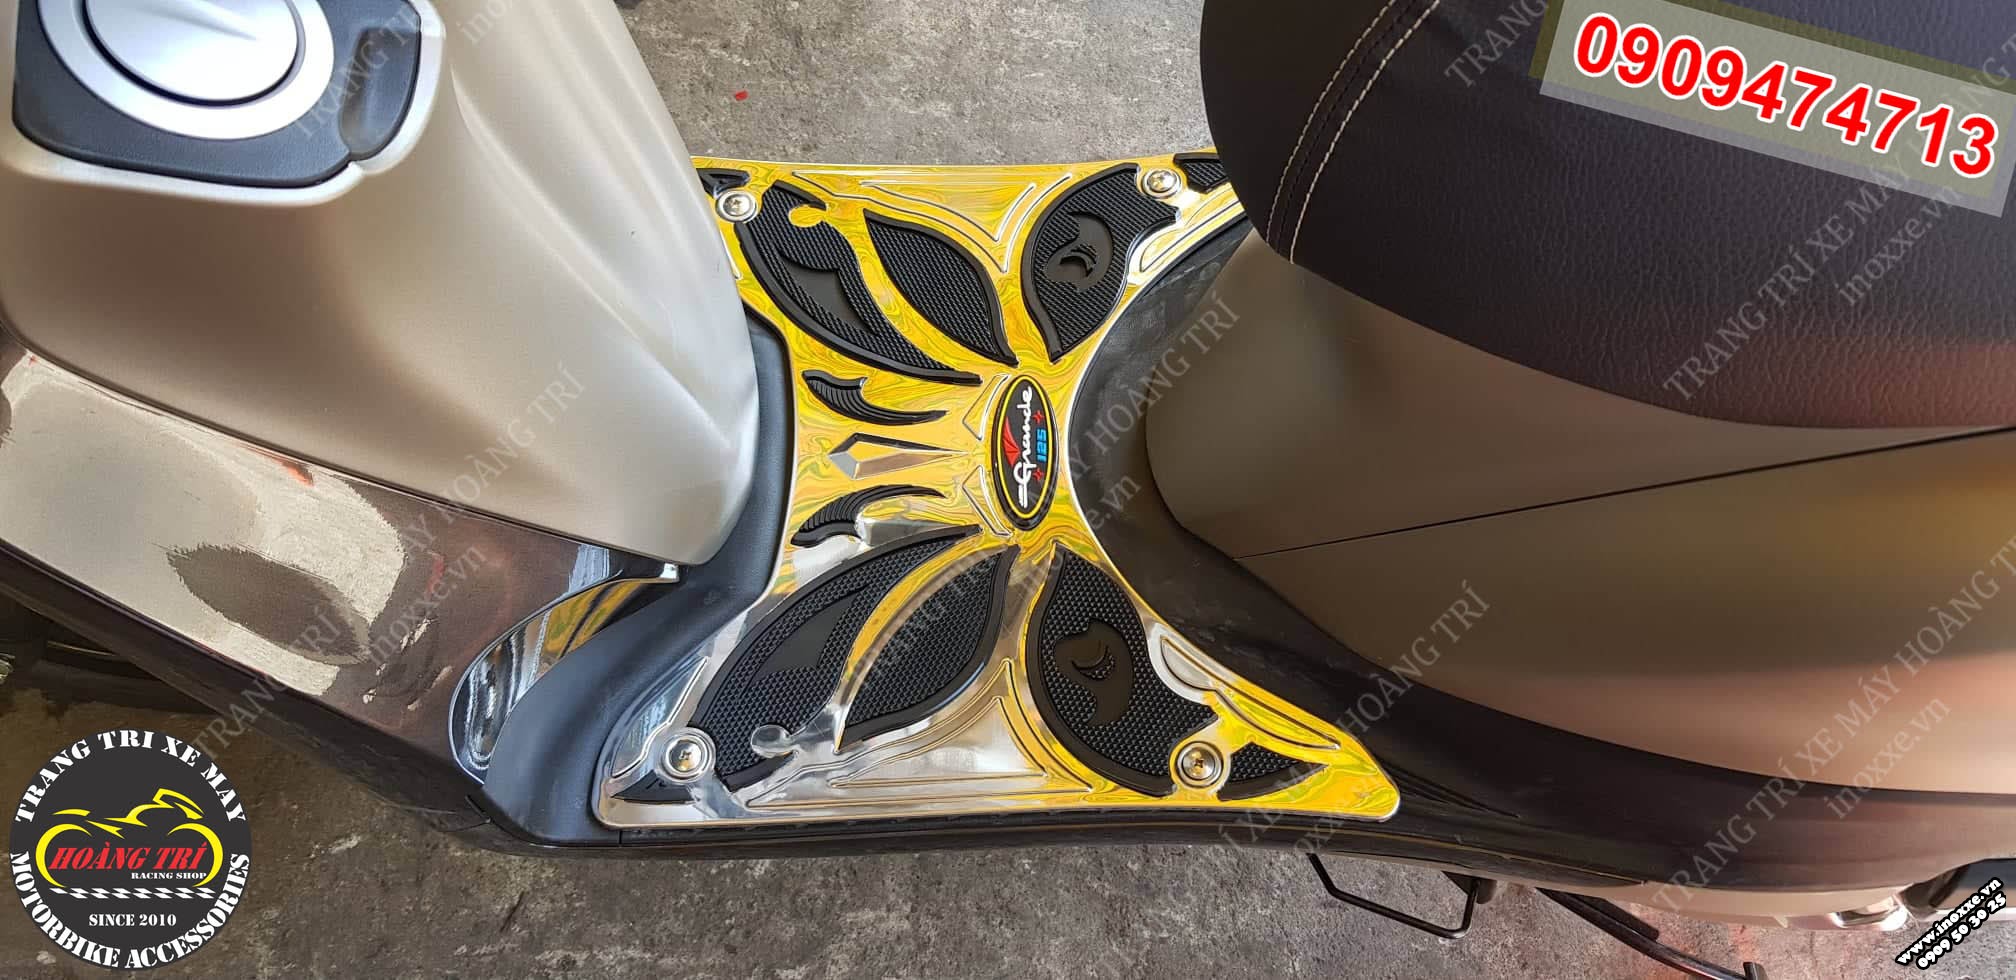 Cận cảnh lắp đặt lên xe thảm để chân Yamaha Grande 2019 Inox